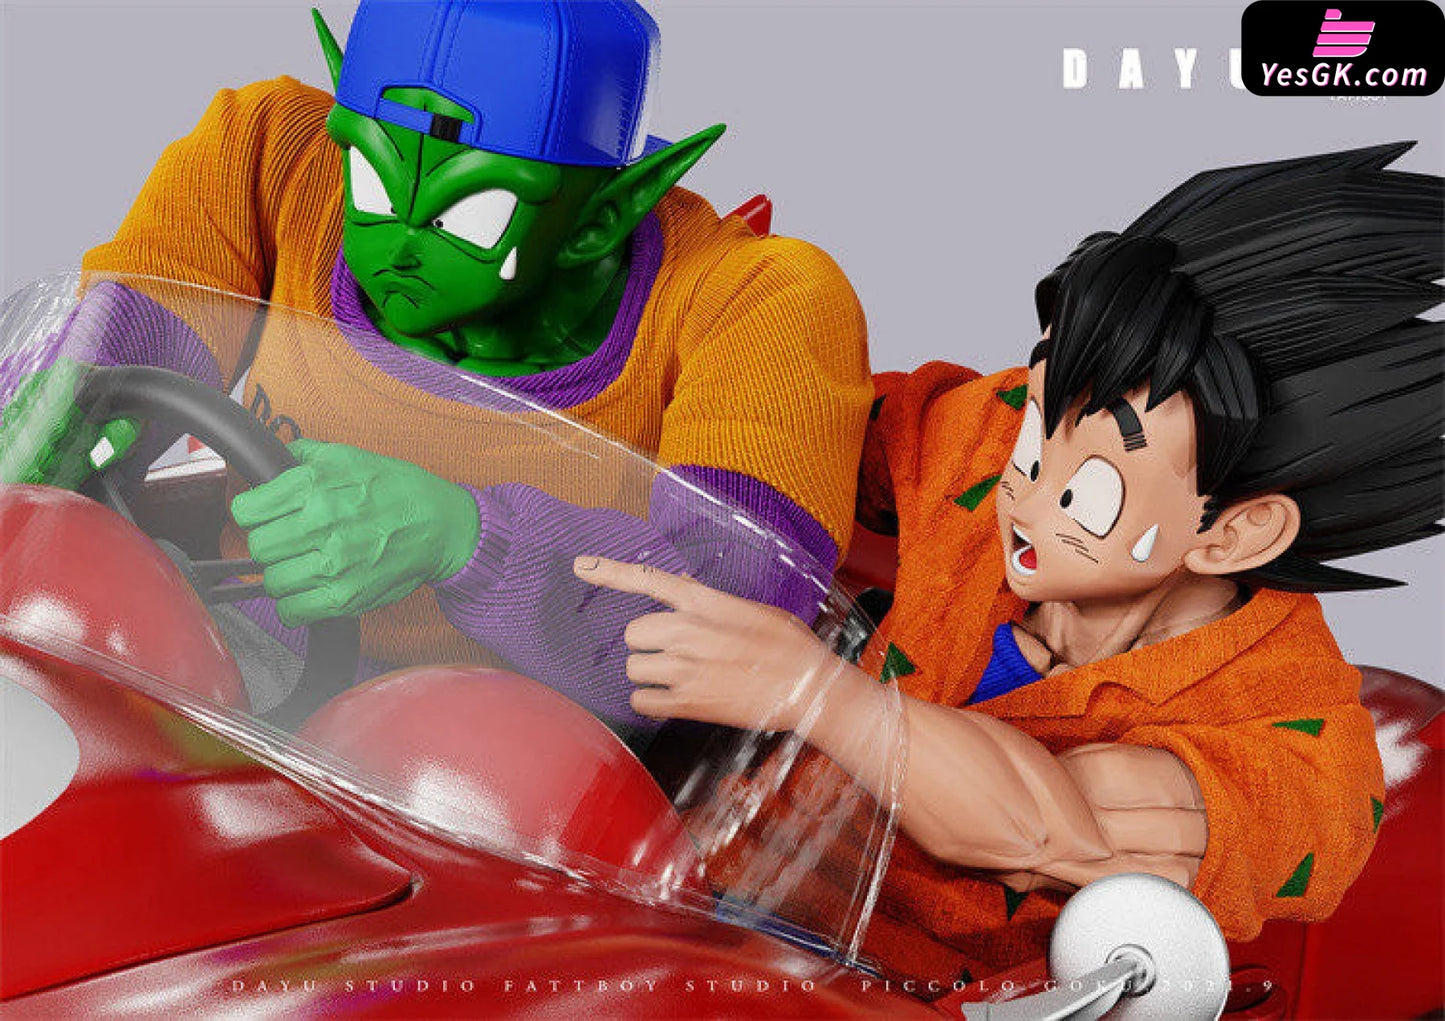 Dragon Ball Driving Piccolo And Goku Resin Statue - Da Yu X Fatt Boy Studio [Pre-Order Closed]